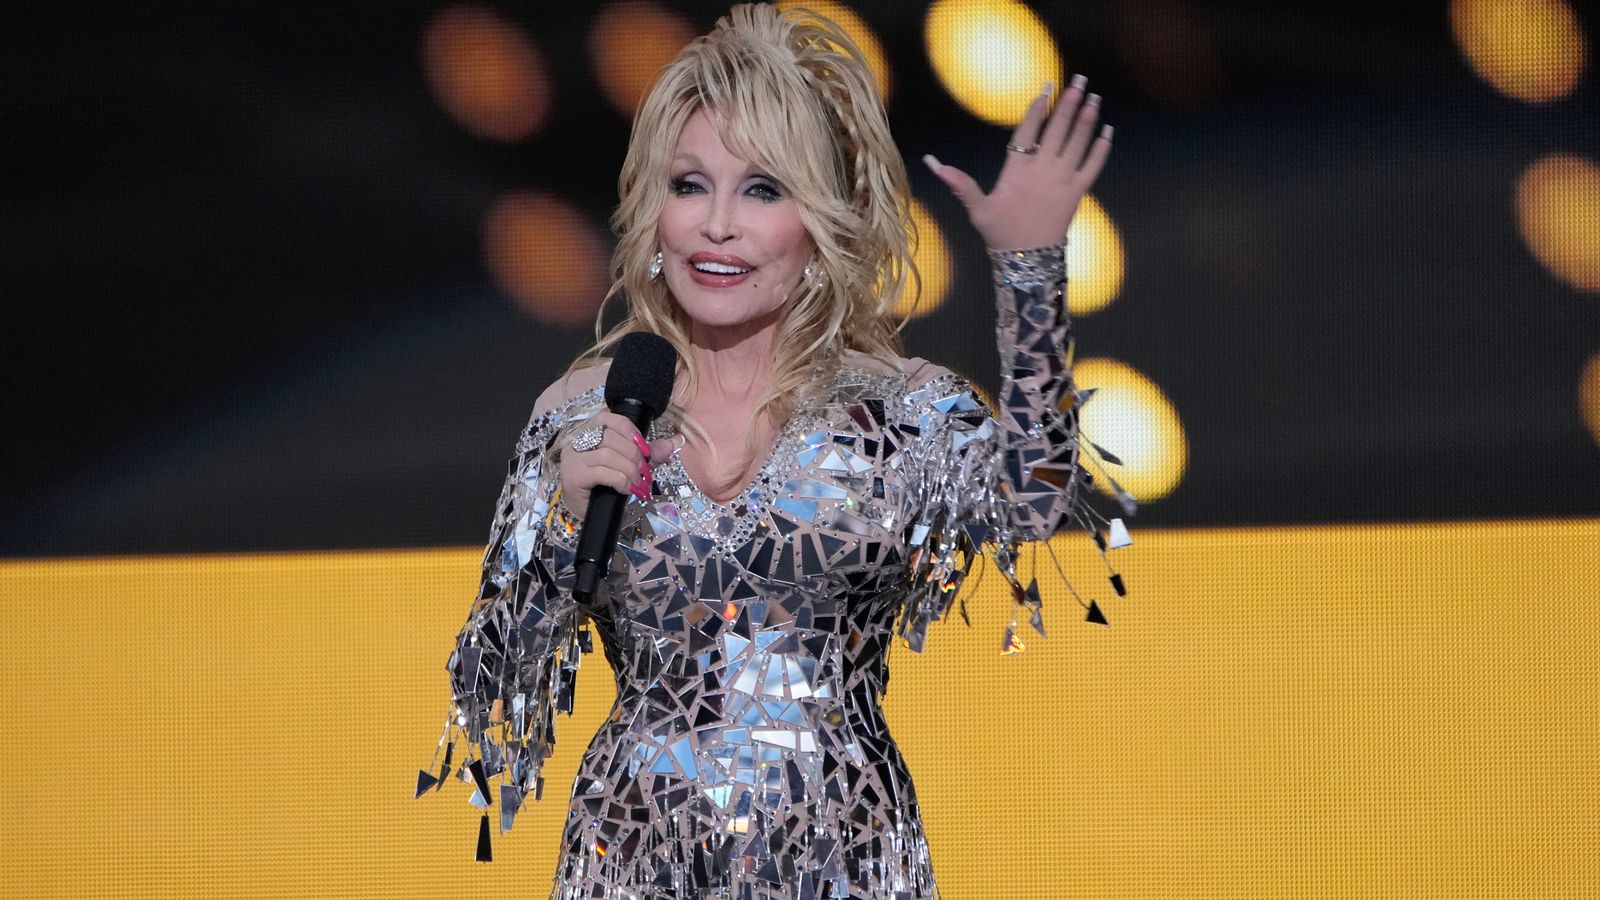 Dolly Parton keluar dari Hall of Fame Rock & Roll tahun ini |  Berita Ent & Seni